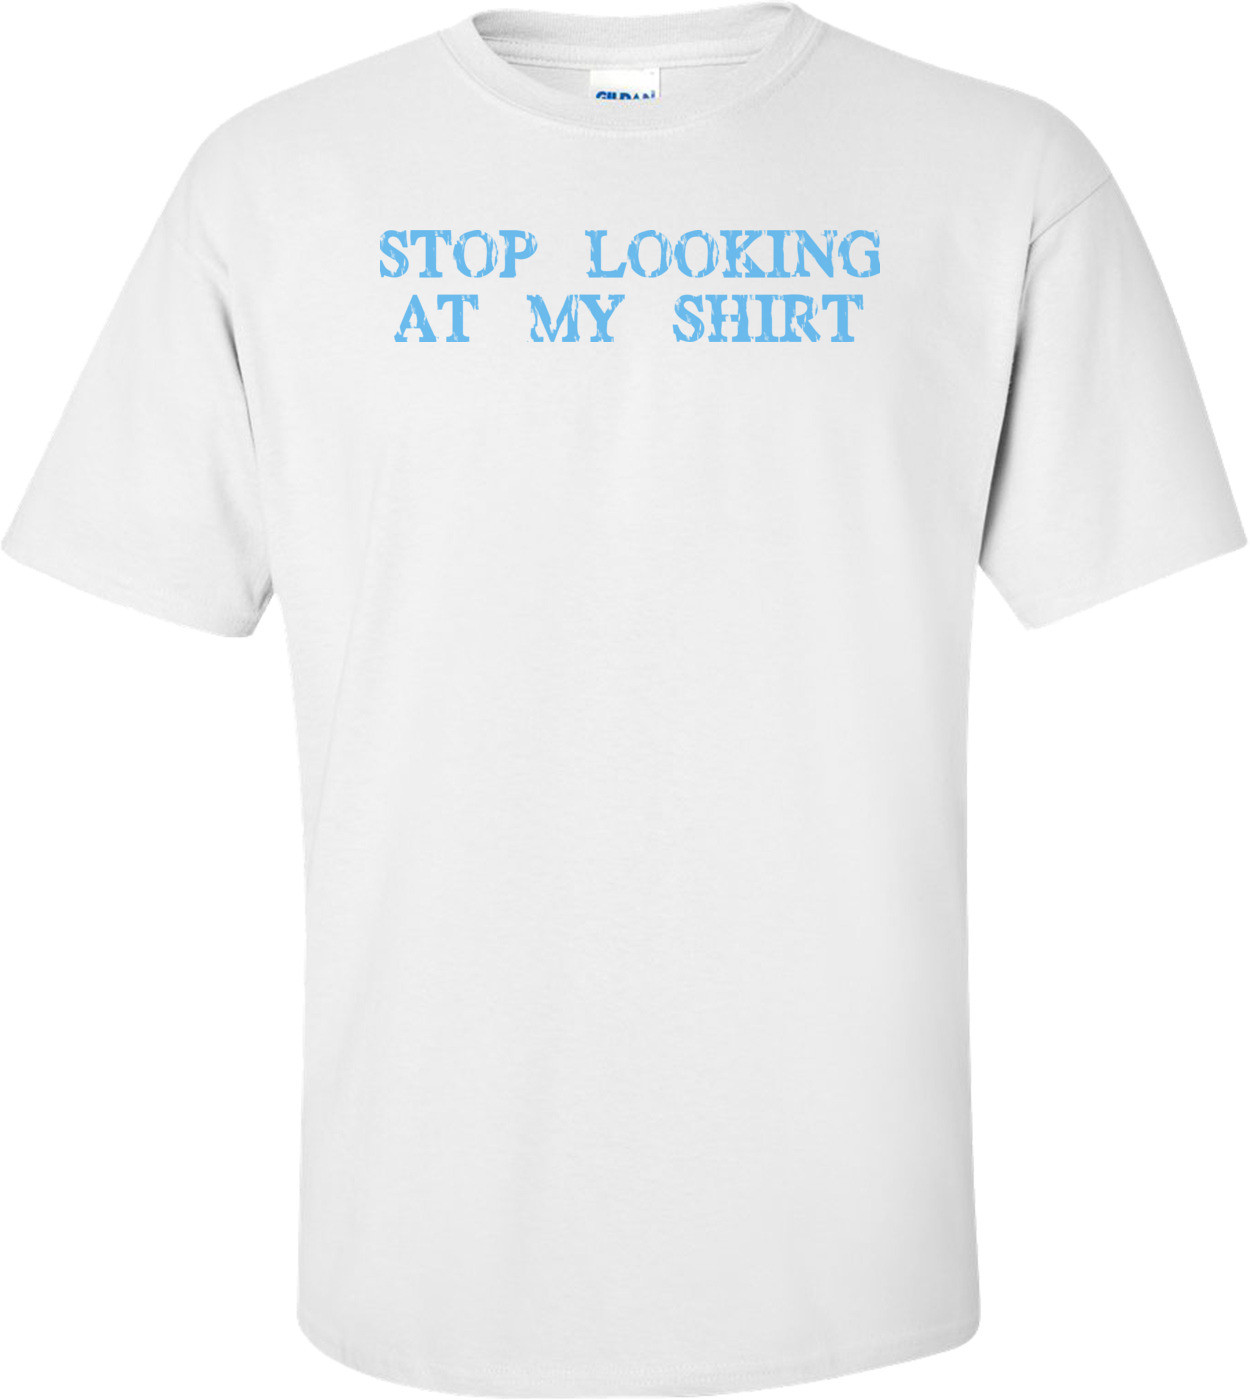 Stop Looking At My Shirt - T-shirt